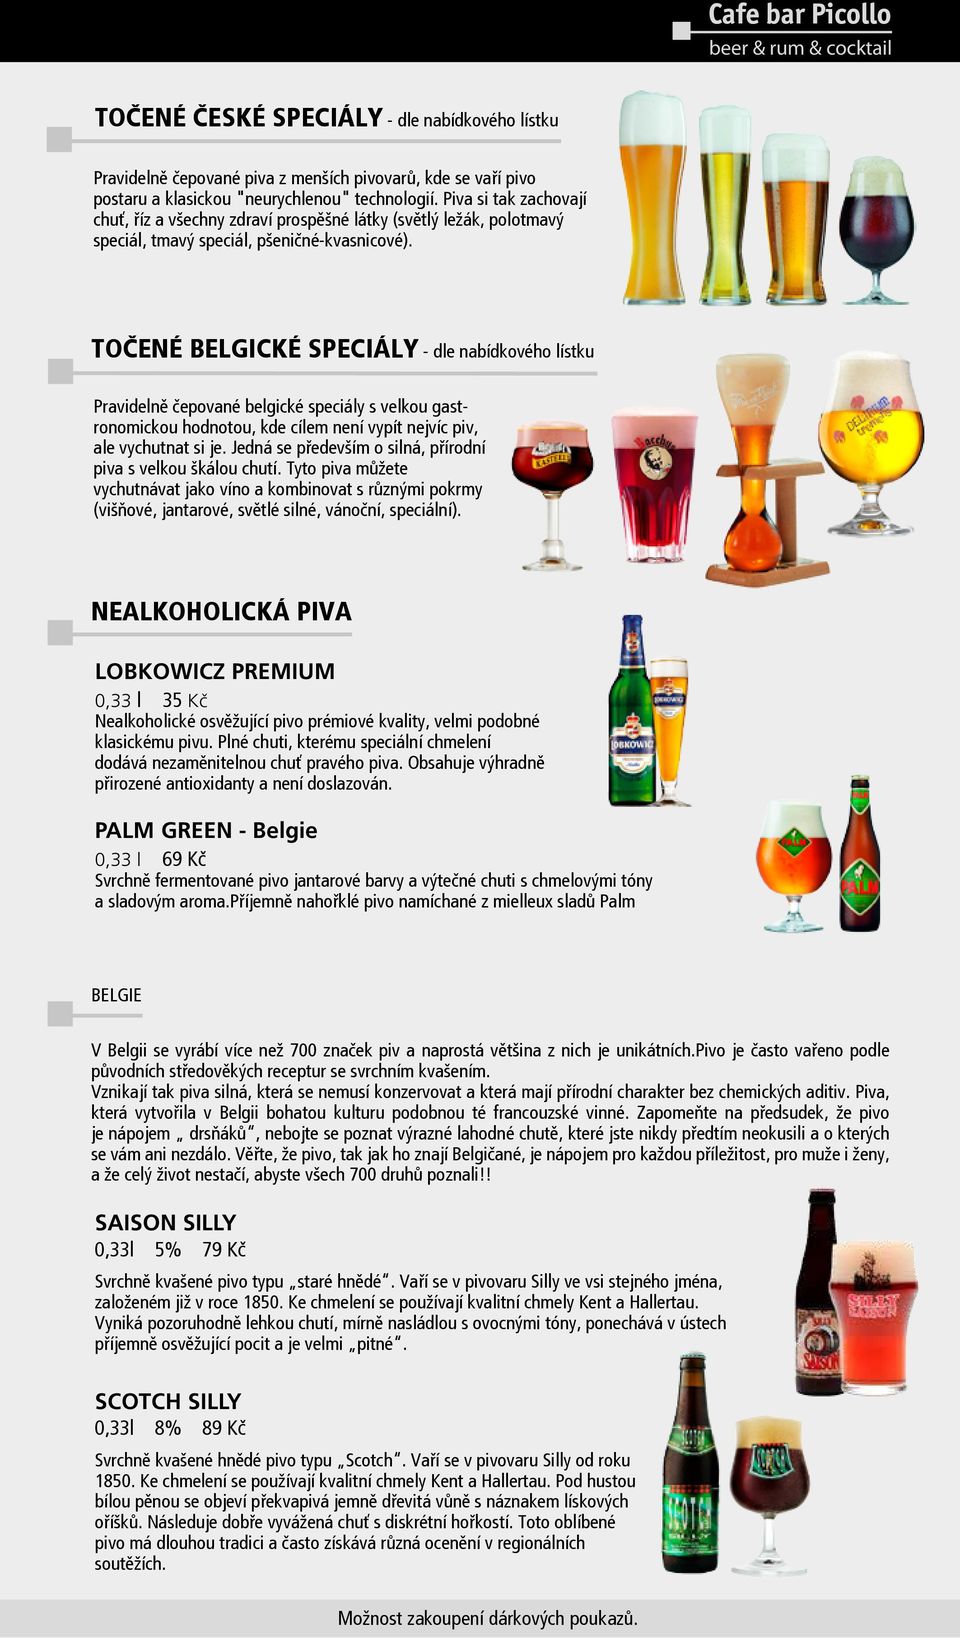 Točené belgické speciály - dle nabídkového lístku Pravidelně čepované belgické speciály s velkou gastronomickou hodnotou, kde cílem není vypít nejvíc piv, ale vychutnat si je.